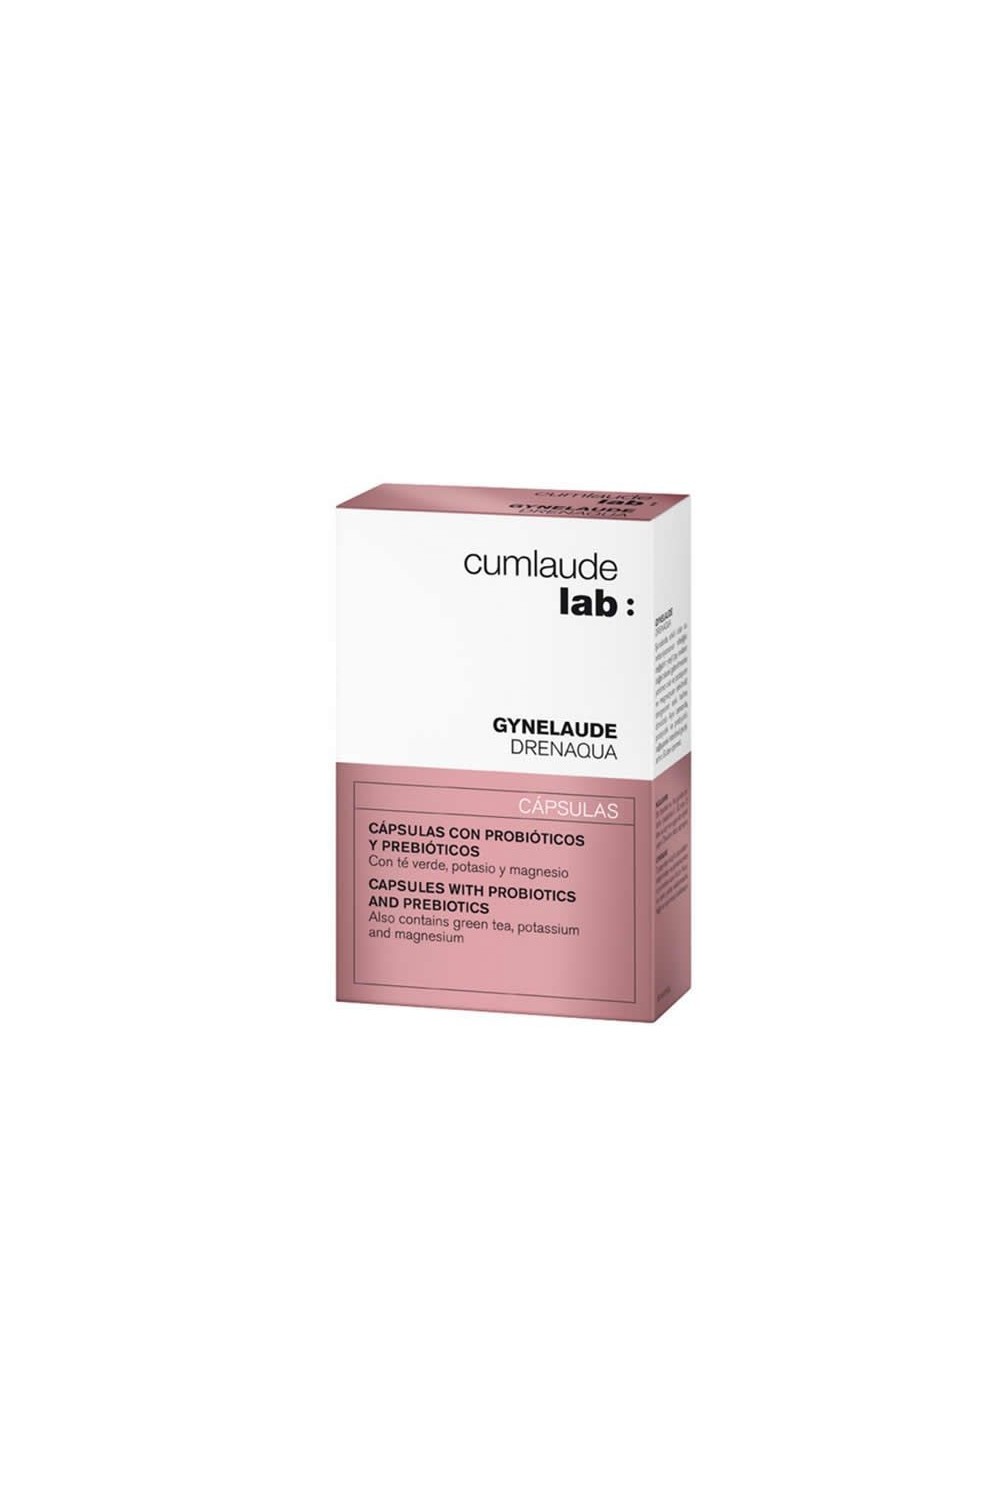 Cumlaude Drenaqua Caspsules With Probiotics And Prebiotics 30 Units